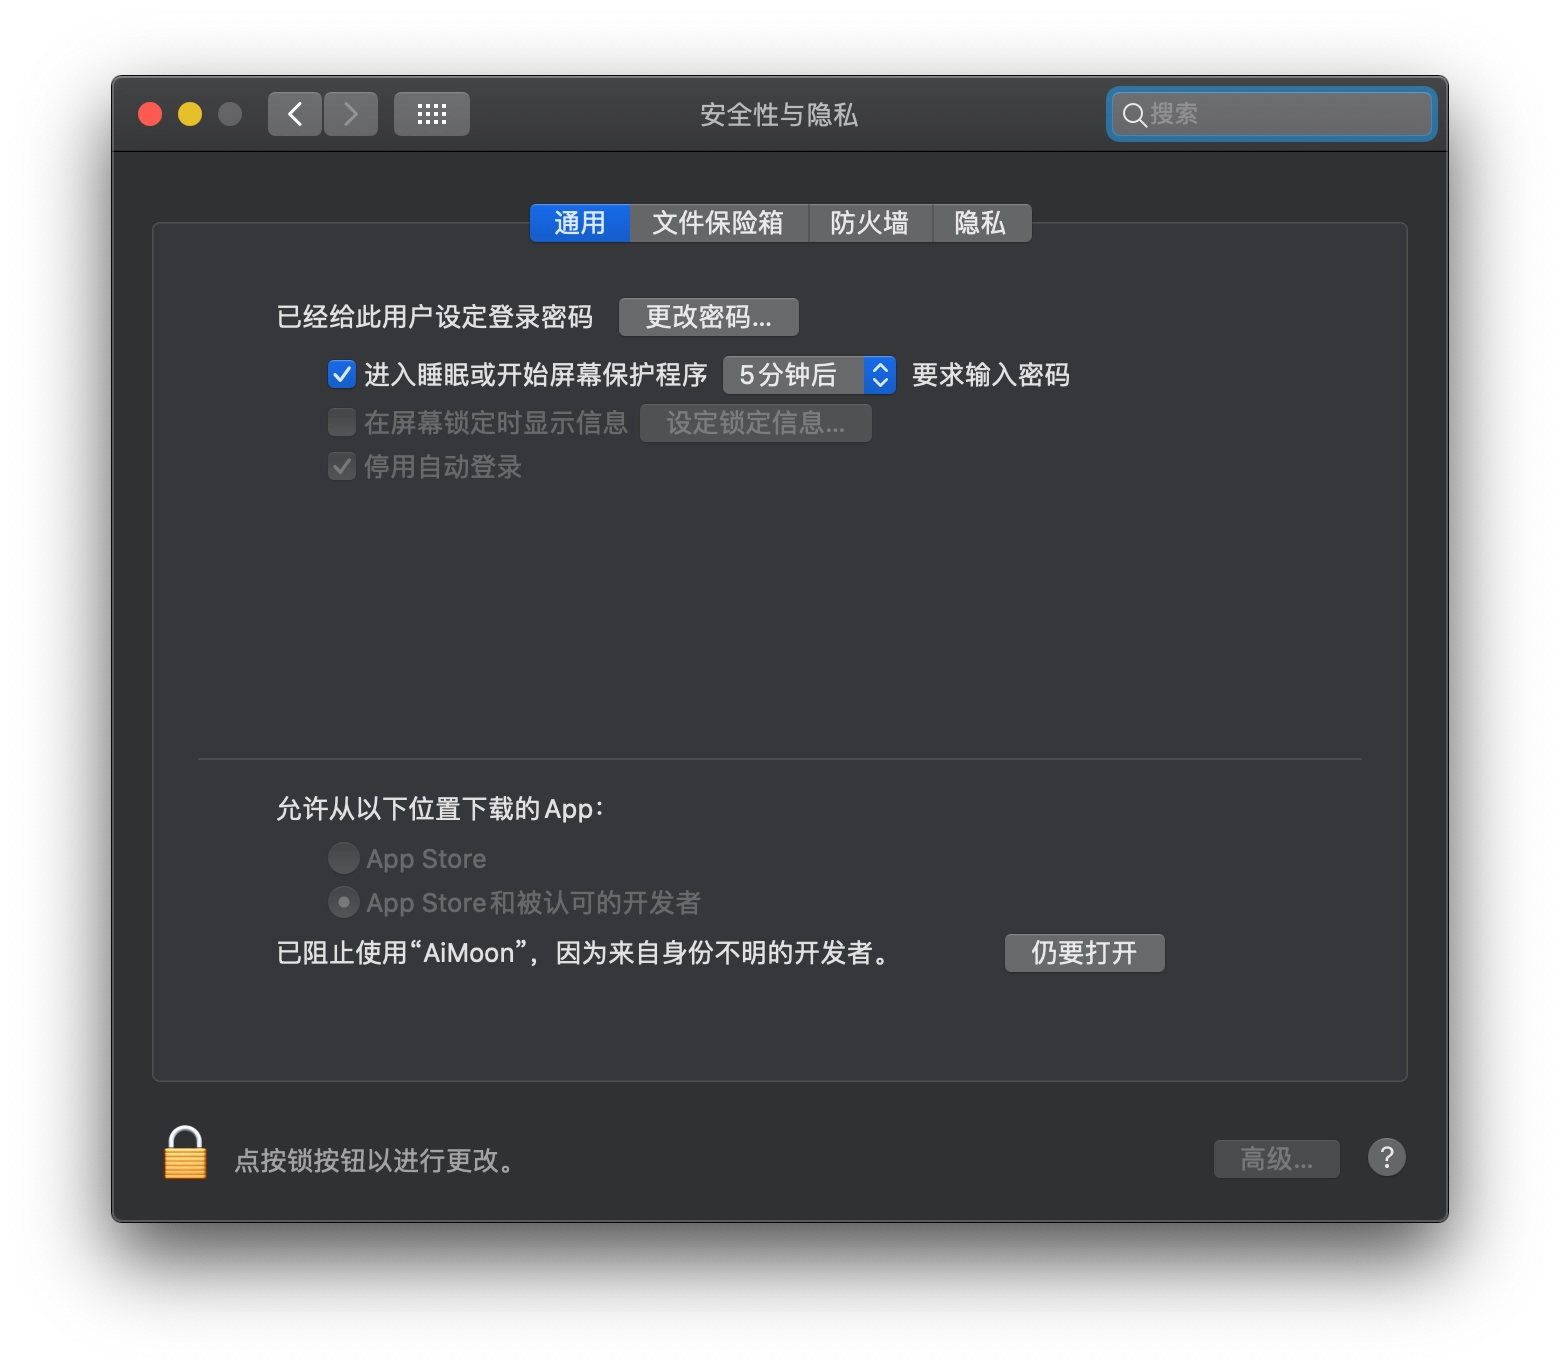 允许 macOS 运行从任何来源下载的应用软件